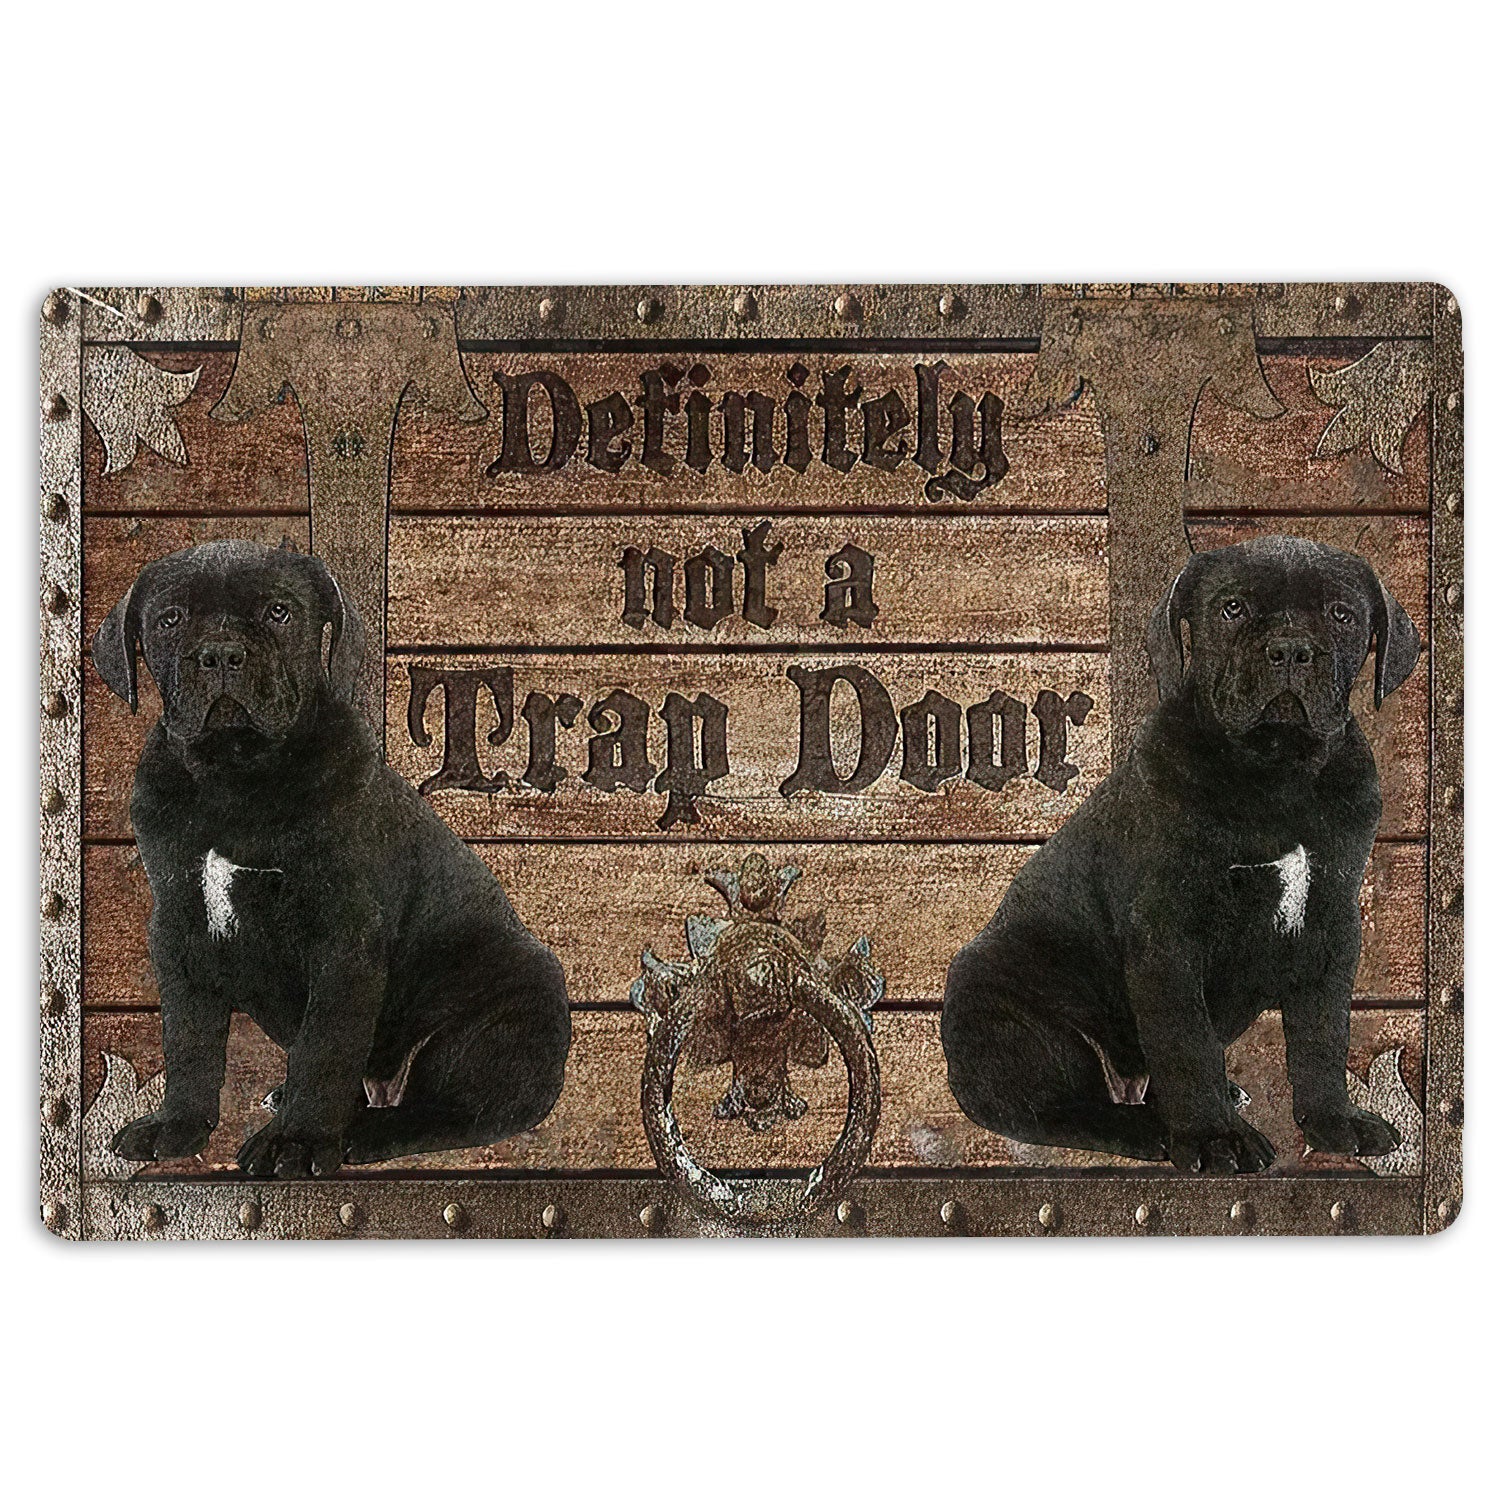 Definitely Not A Trap Door Doormat